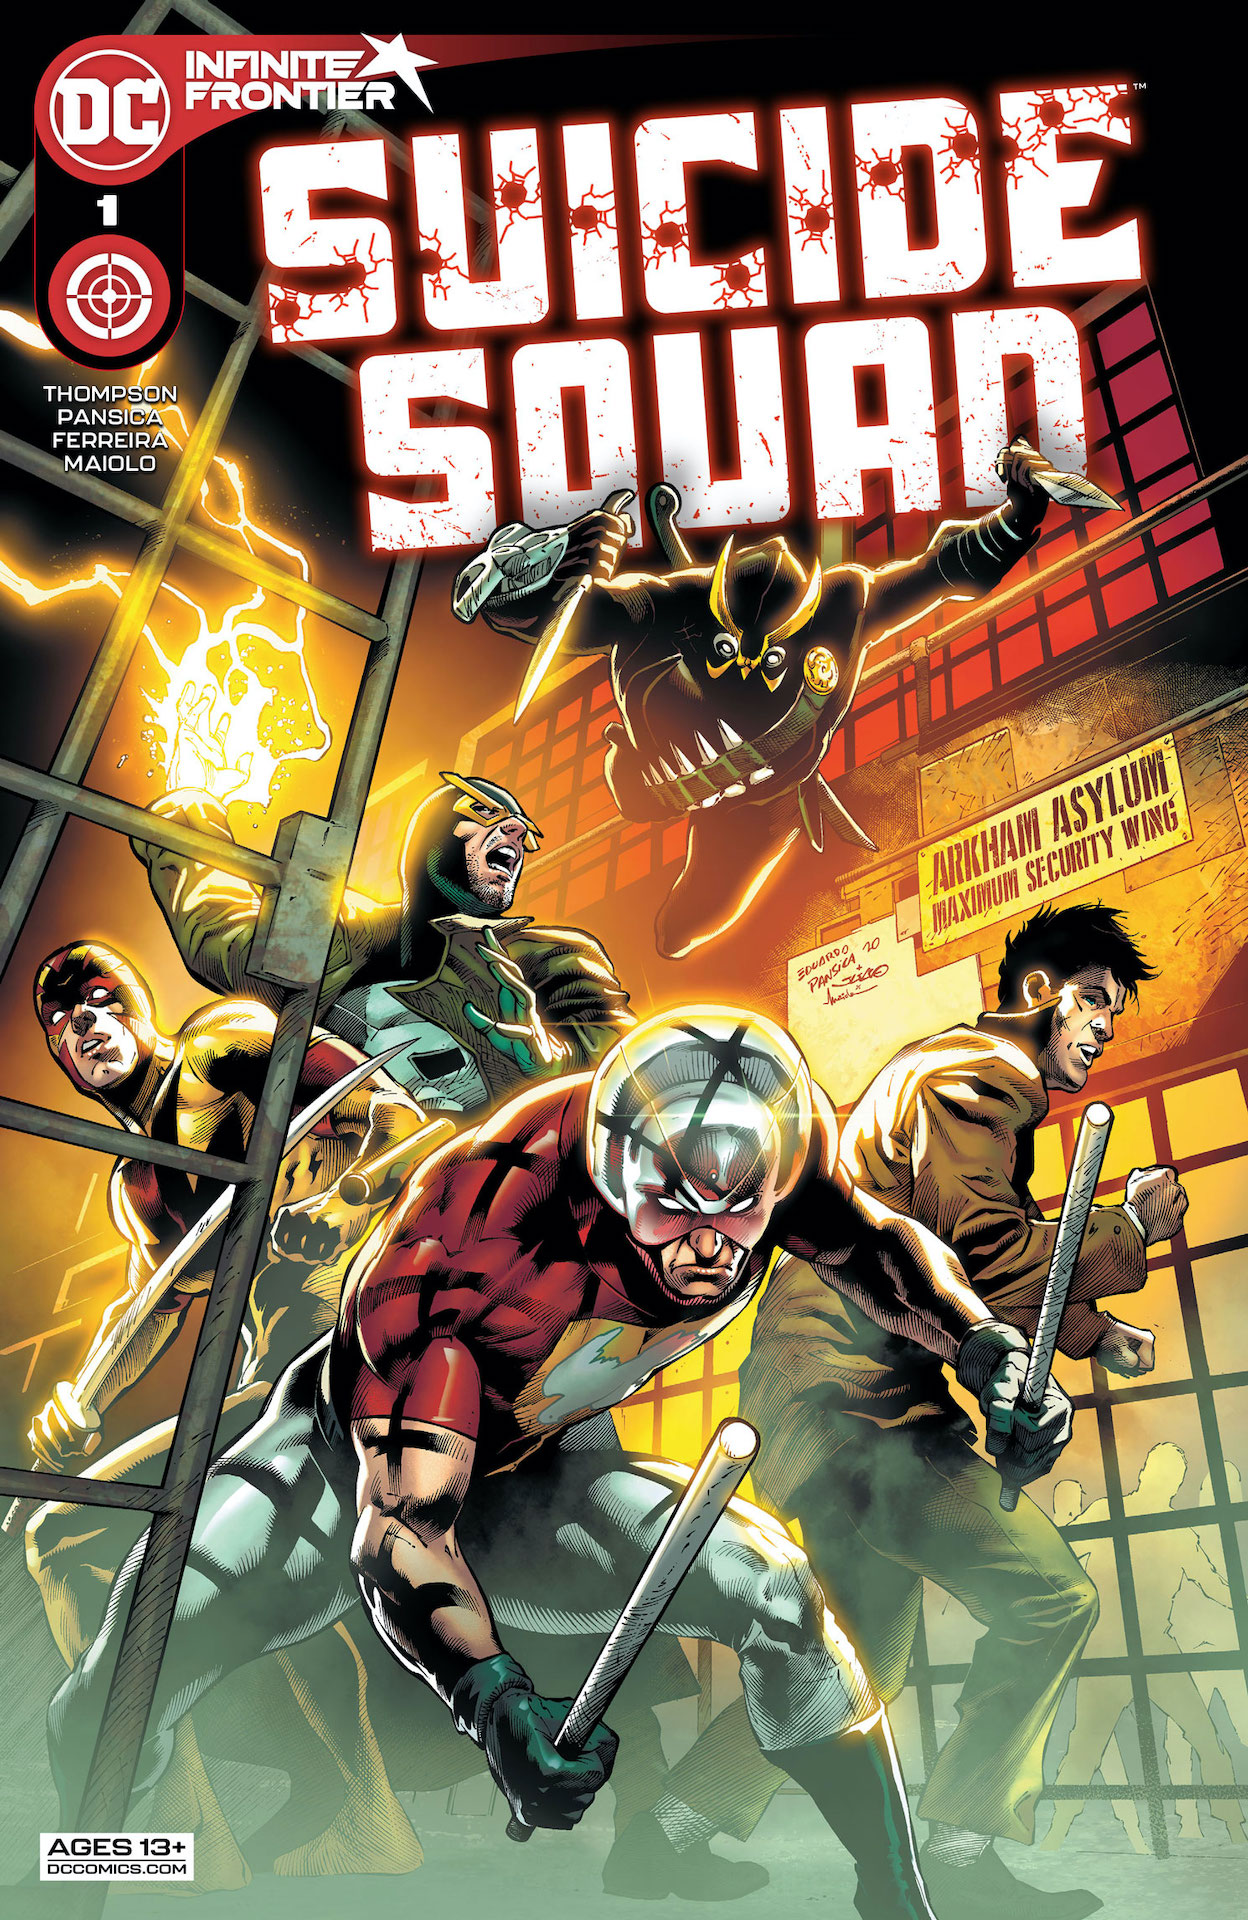 DC Preview: Suicide Squad #1